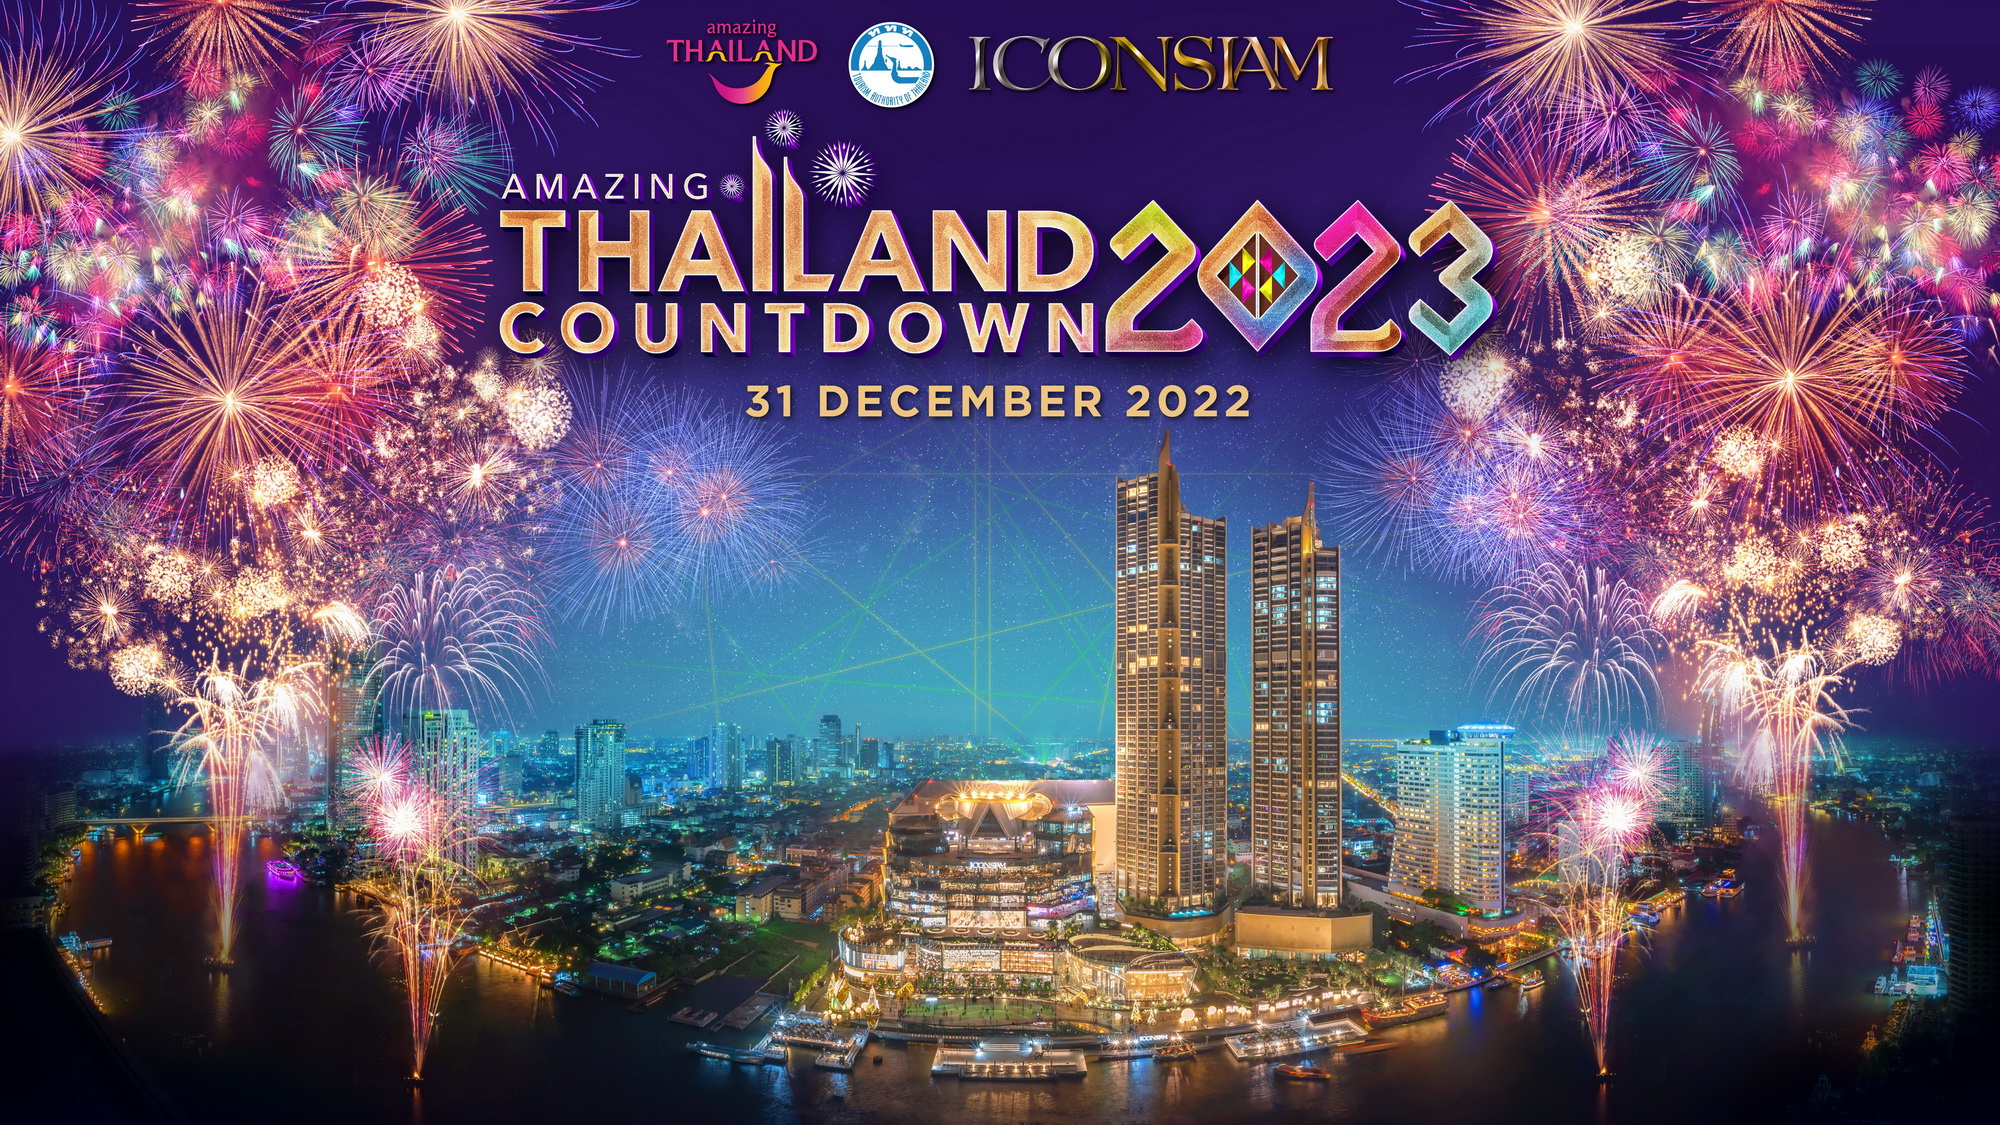 ไอคอนสยาม ผนึกกำลังพันธมิตรภาครัฐ เอกชน และชุมชน กระตุ้นการท่องเที่ยว ปักหมุดให้ไทยเป็นแลนมาร์ก “Global Countdown Destination” งานเคาต์ดาวน์ระดับโลก Amazing Thailand Countdown 2023